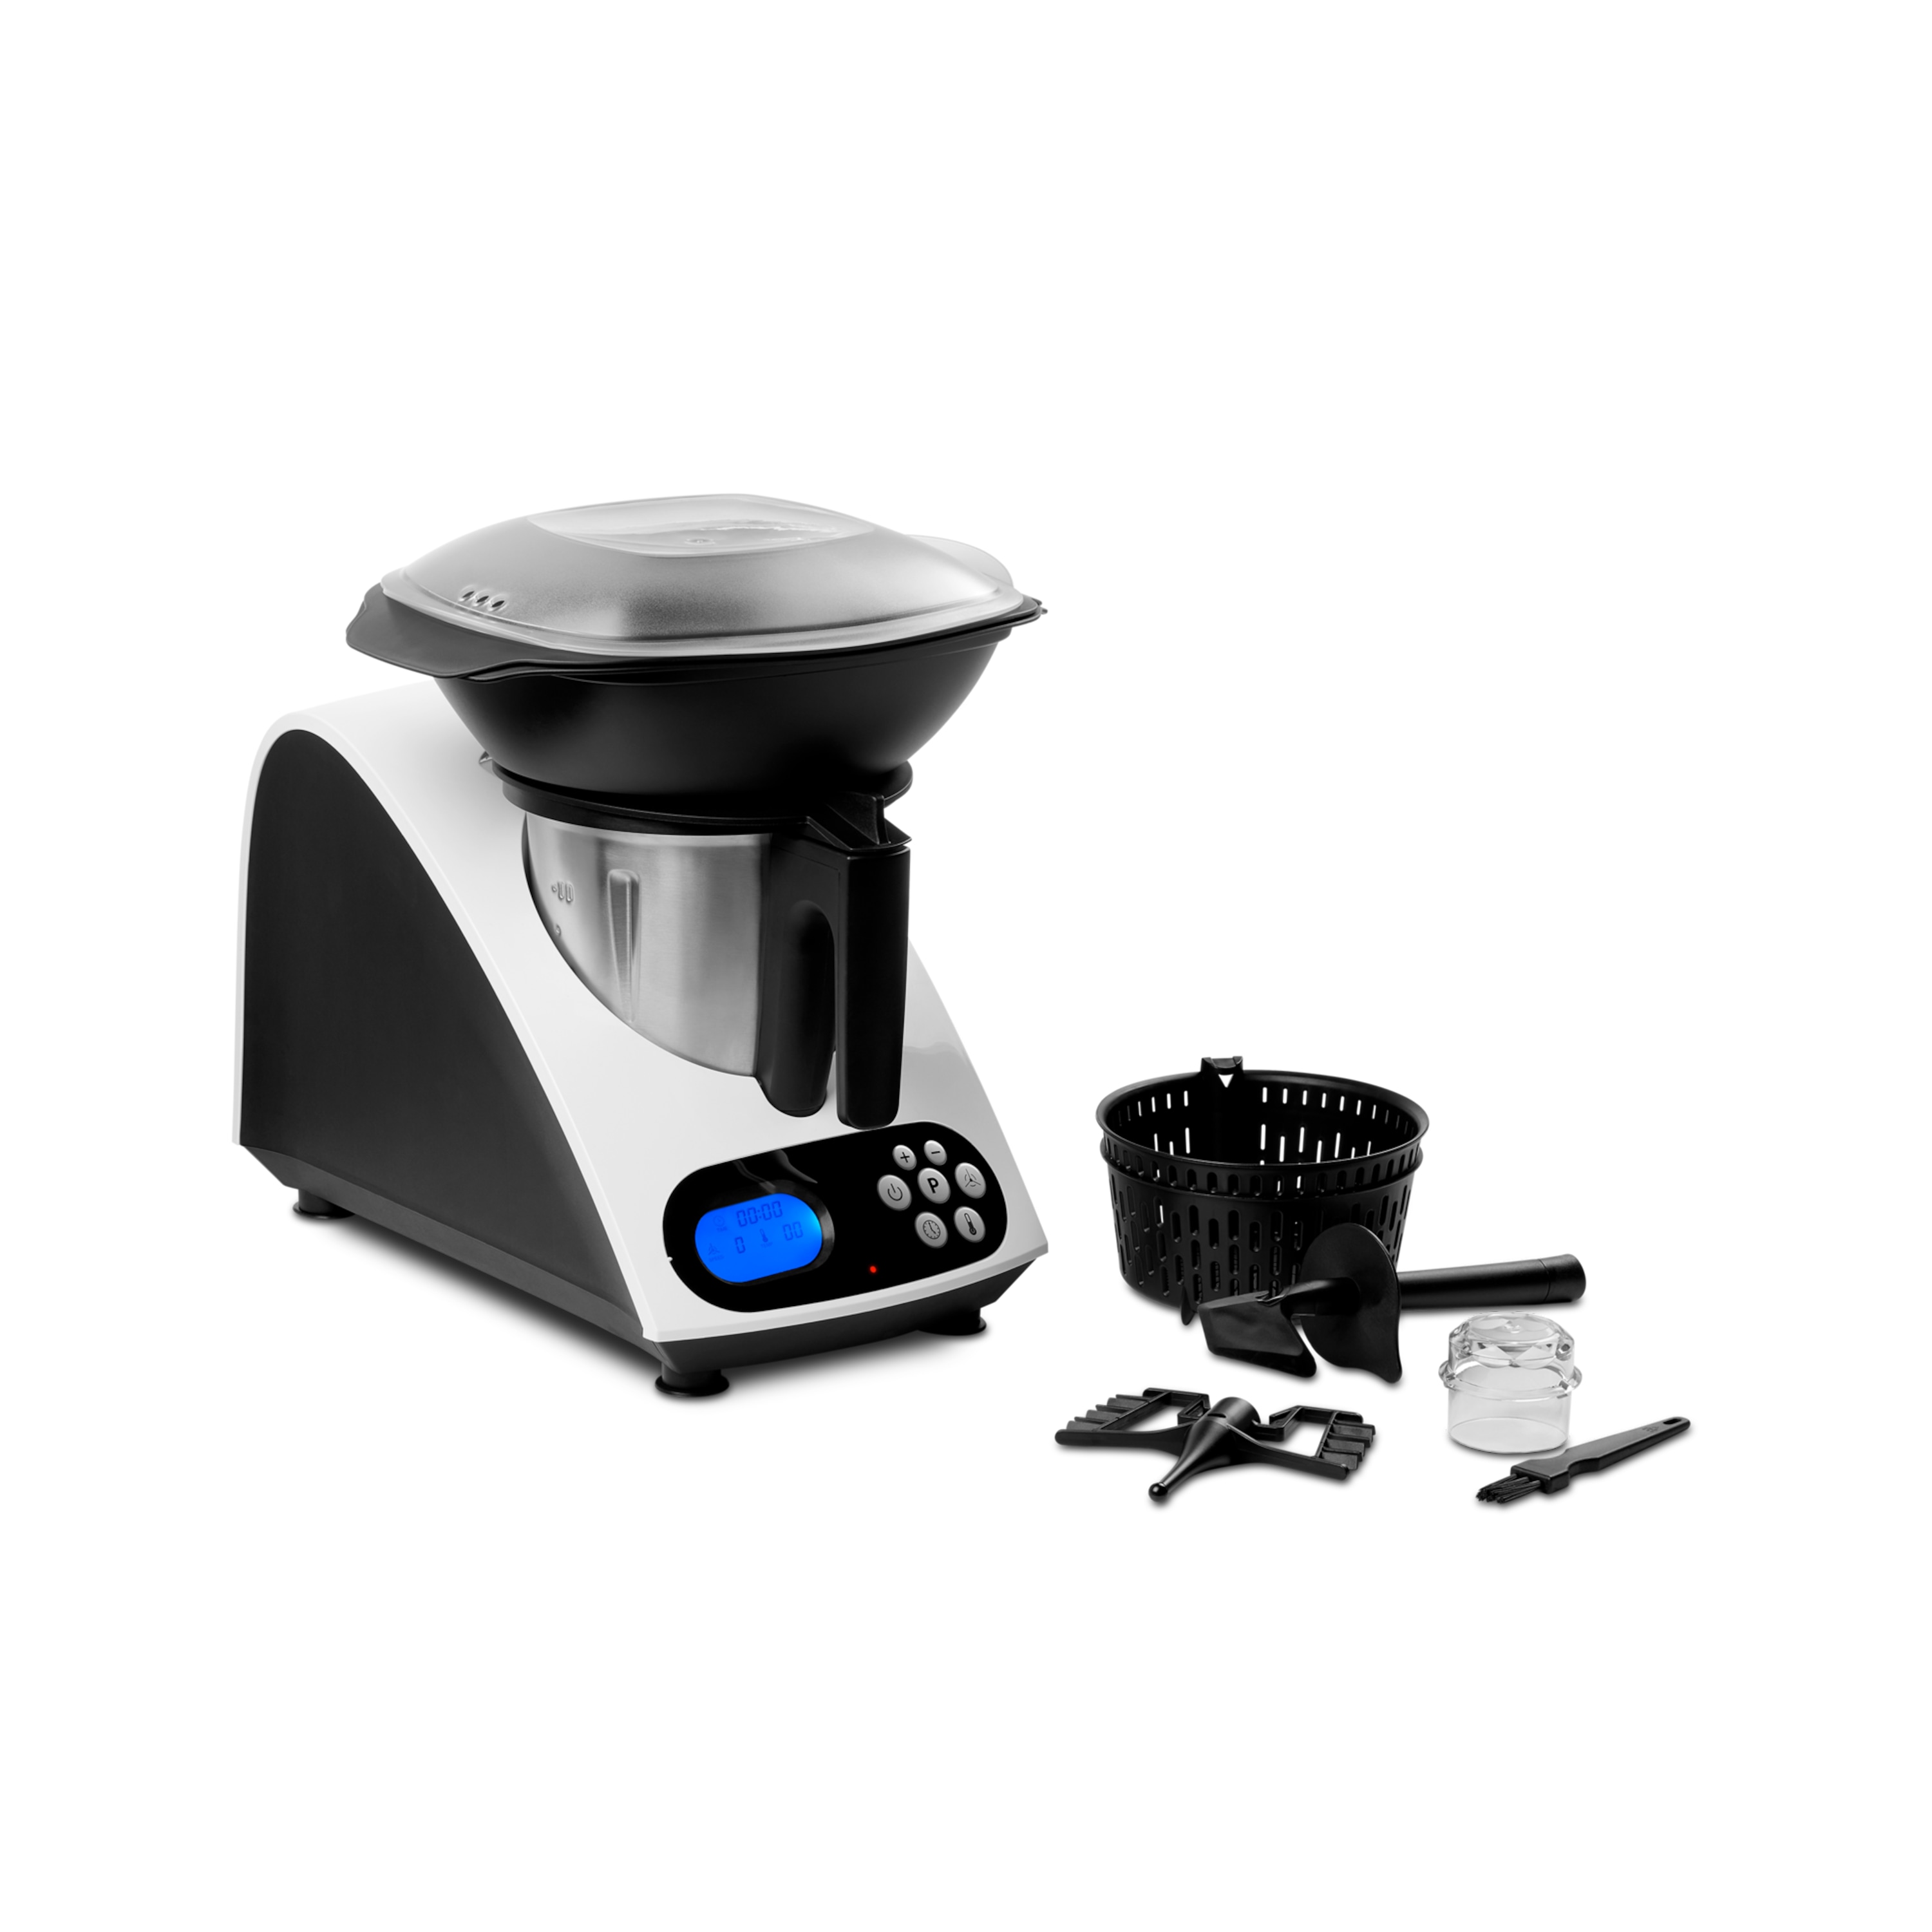 Keukenmachine met kookfunctie MD 16361 | 11 bedrijfsniveaus | Tot 1000 Watt vermogen | Automatische uitschakeling